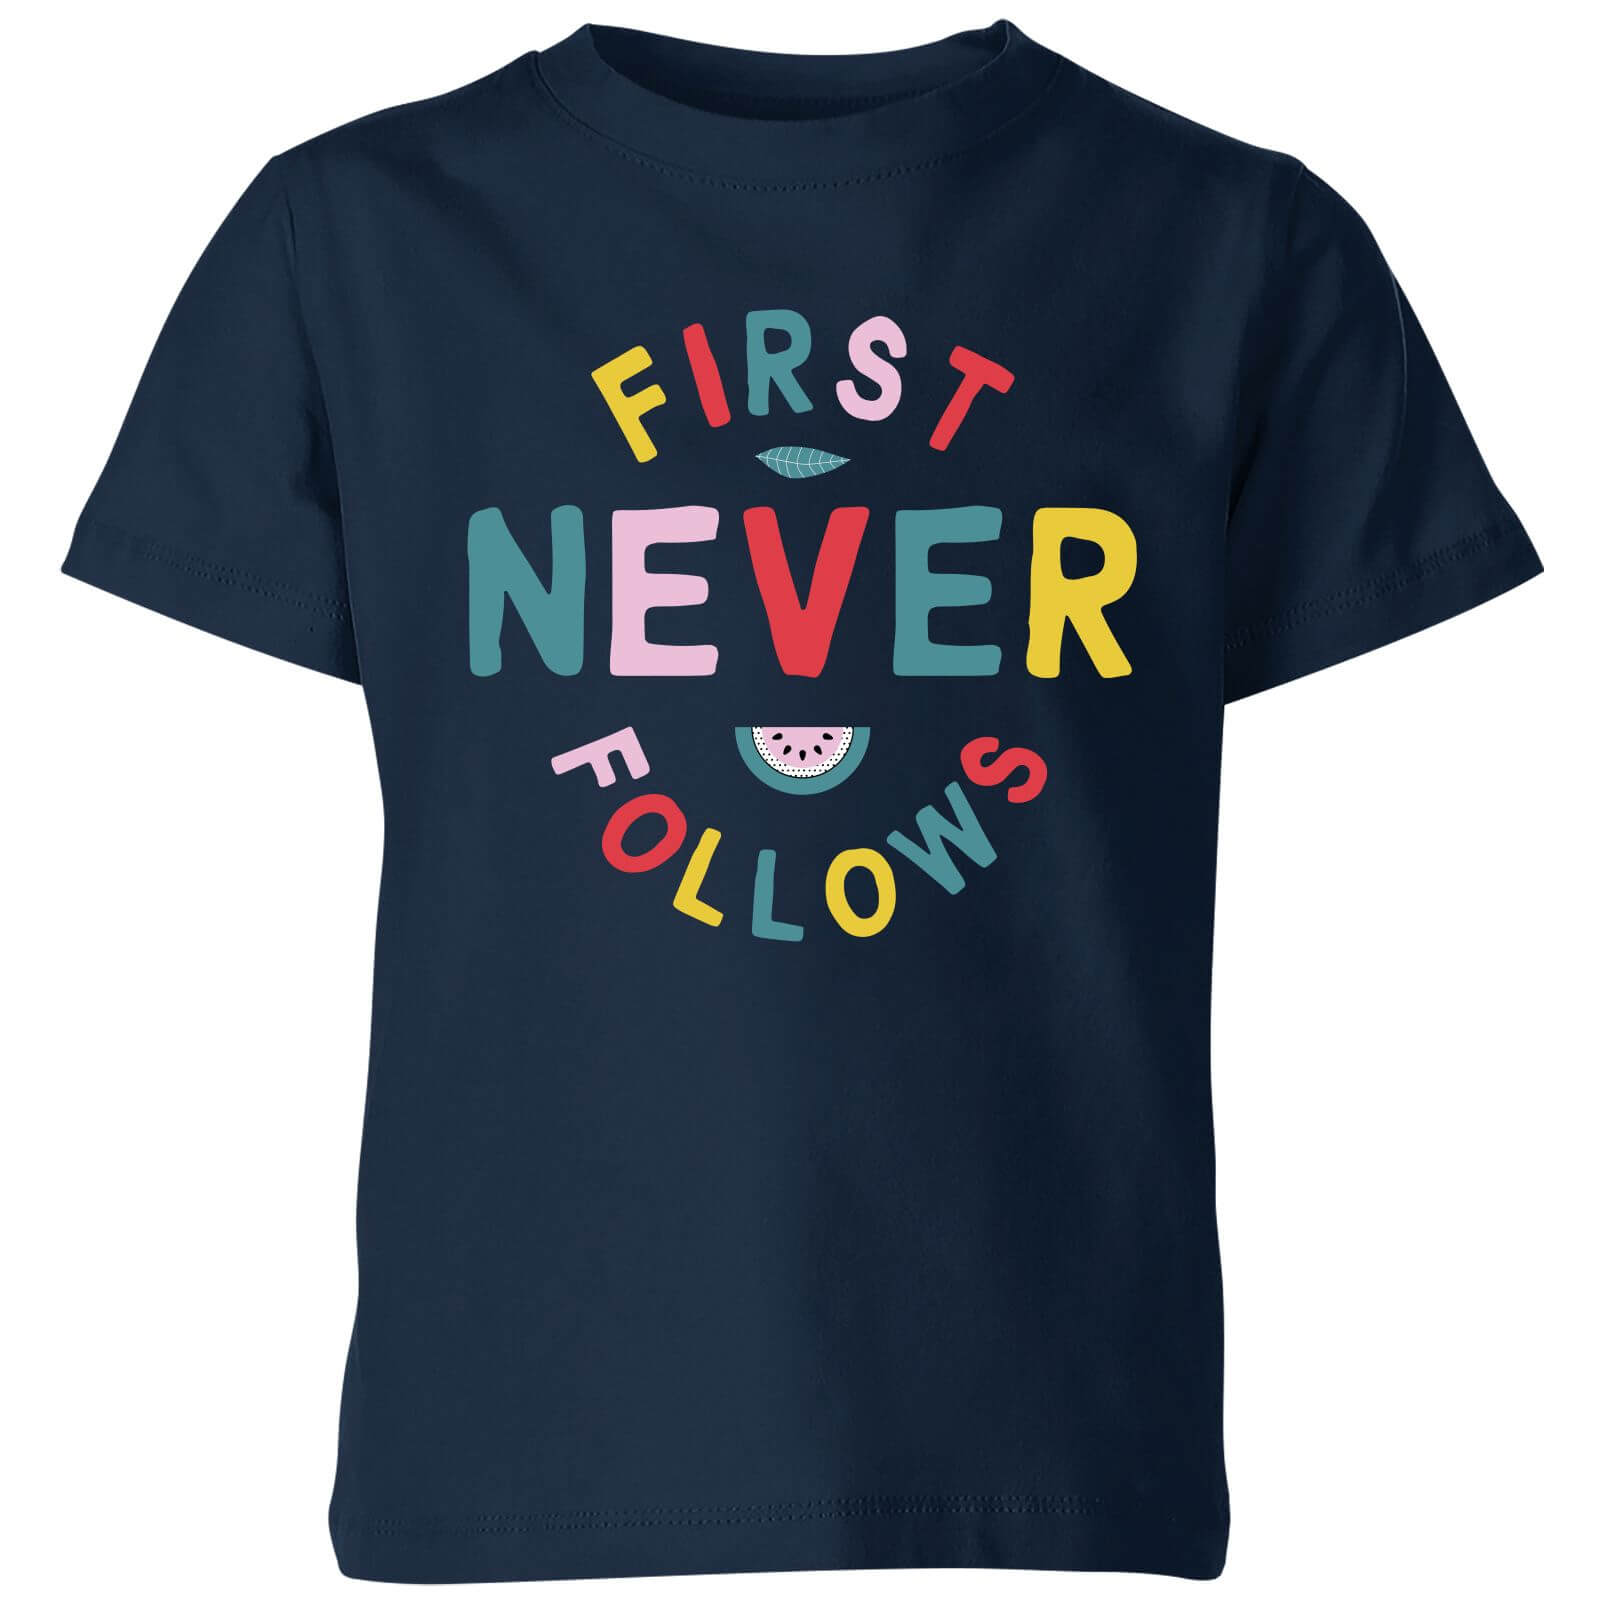 My Little Rascal First Never Follows Kids' T-Shirt - Navy - 3-4 Years - Navy